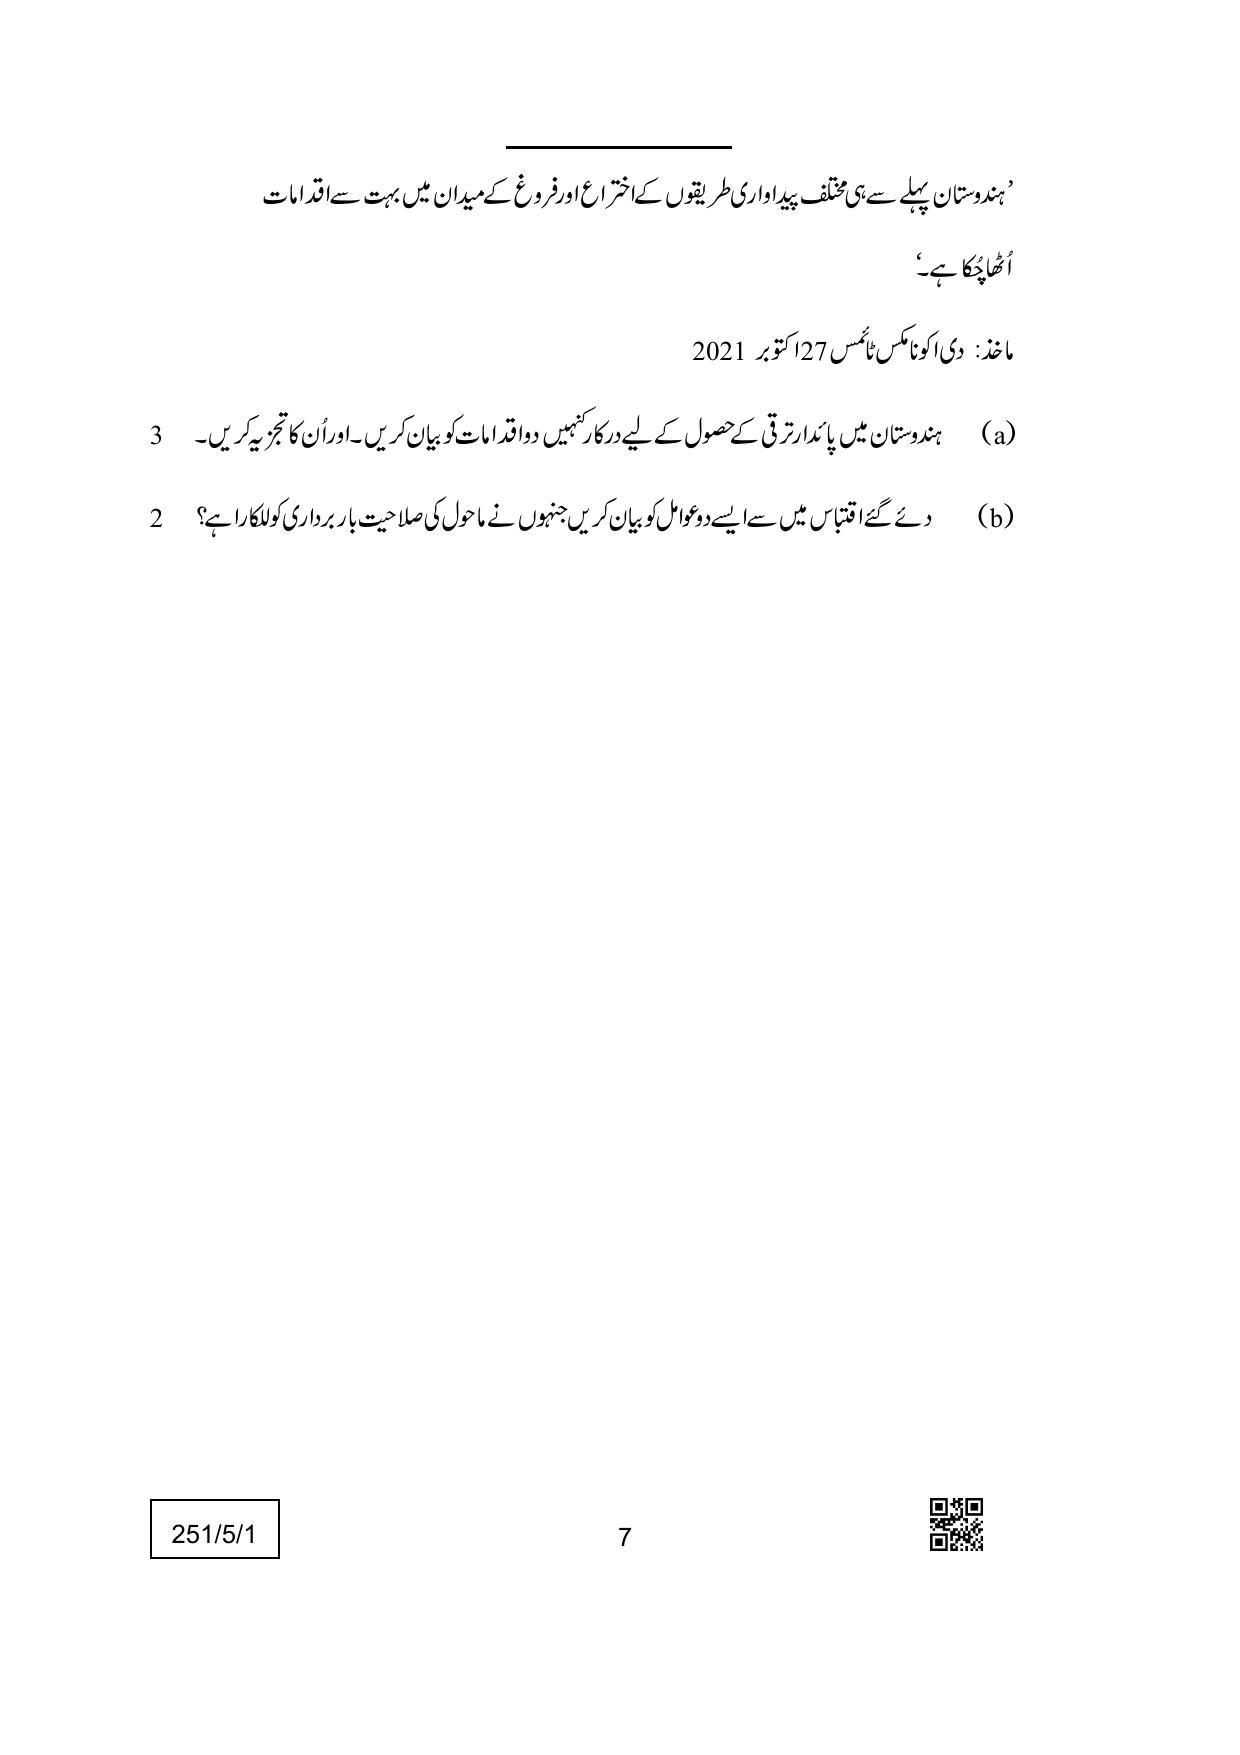 CBSE Class 12 251-5-1 (Economics) Urdu Version 2022 Question Paper - Page 7